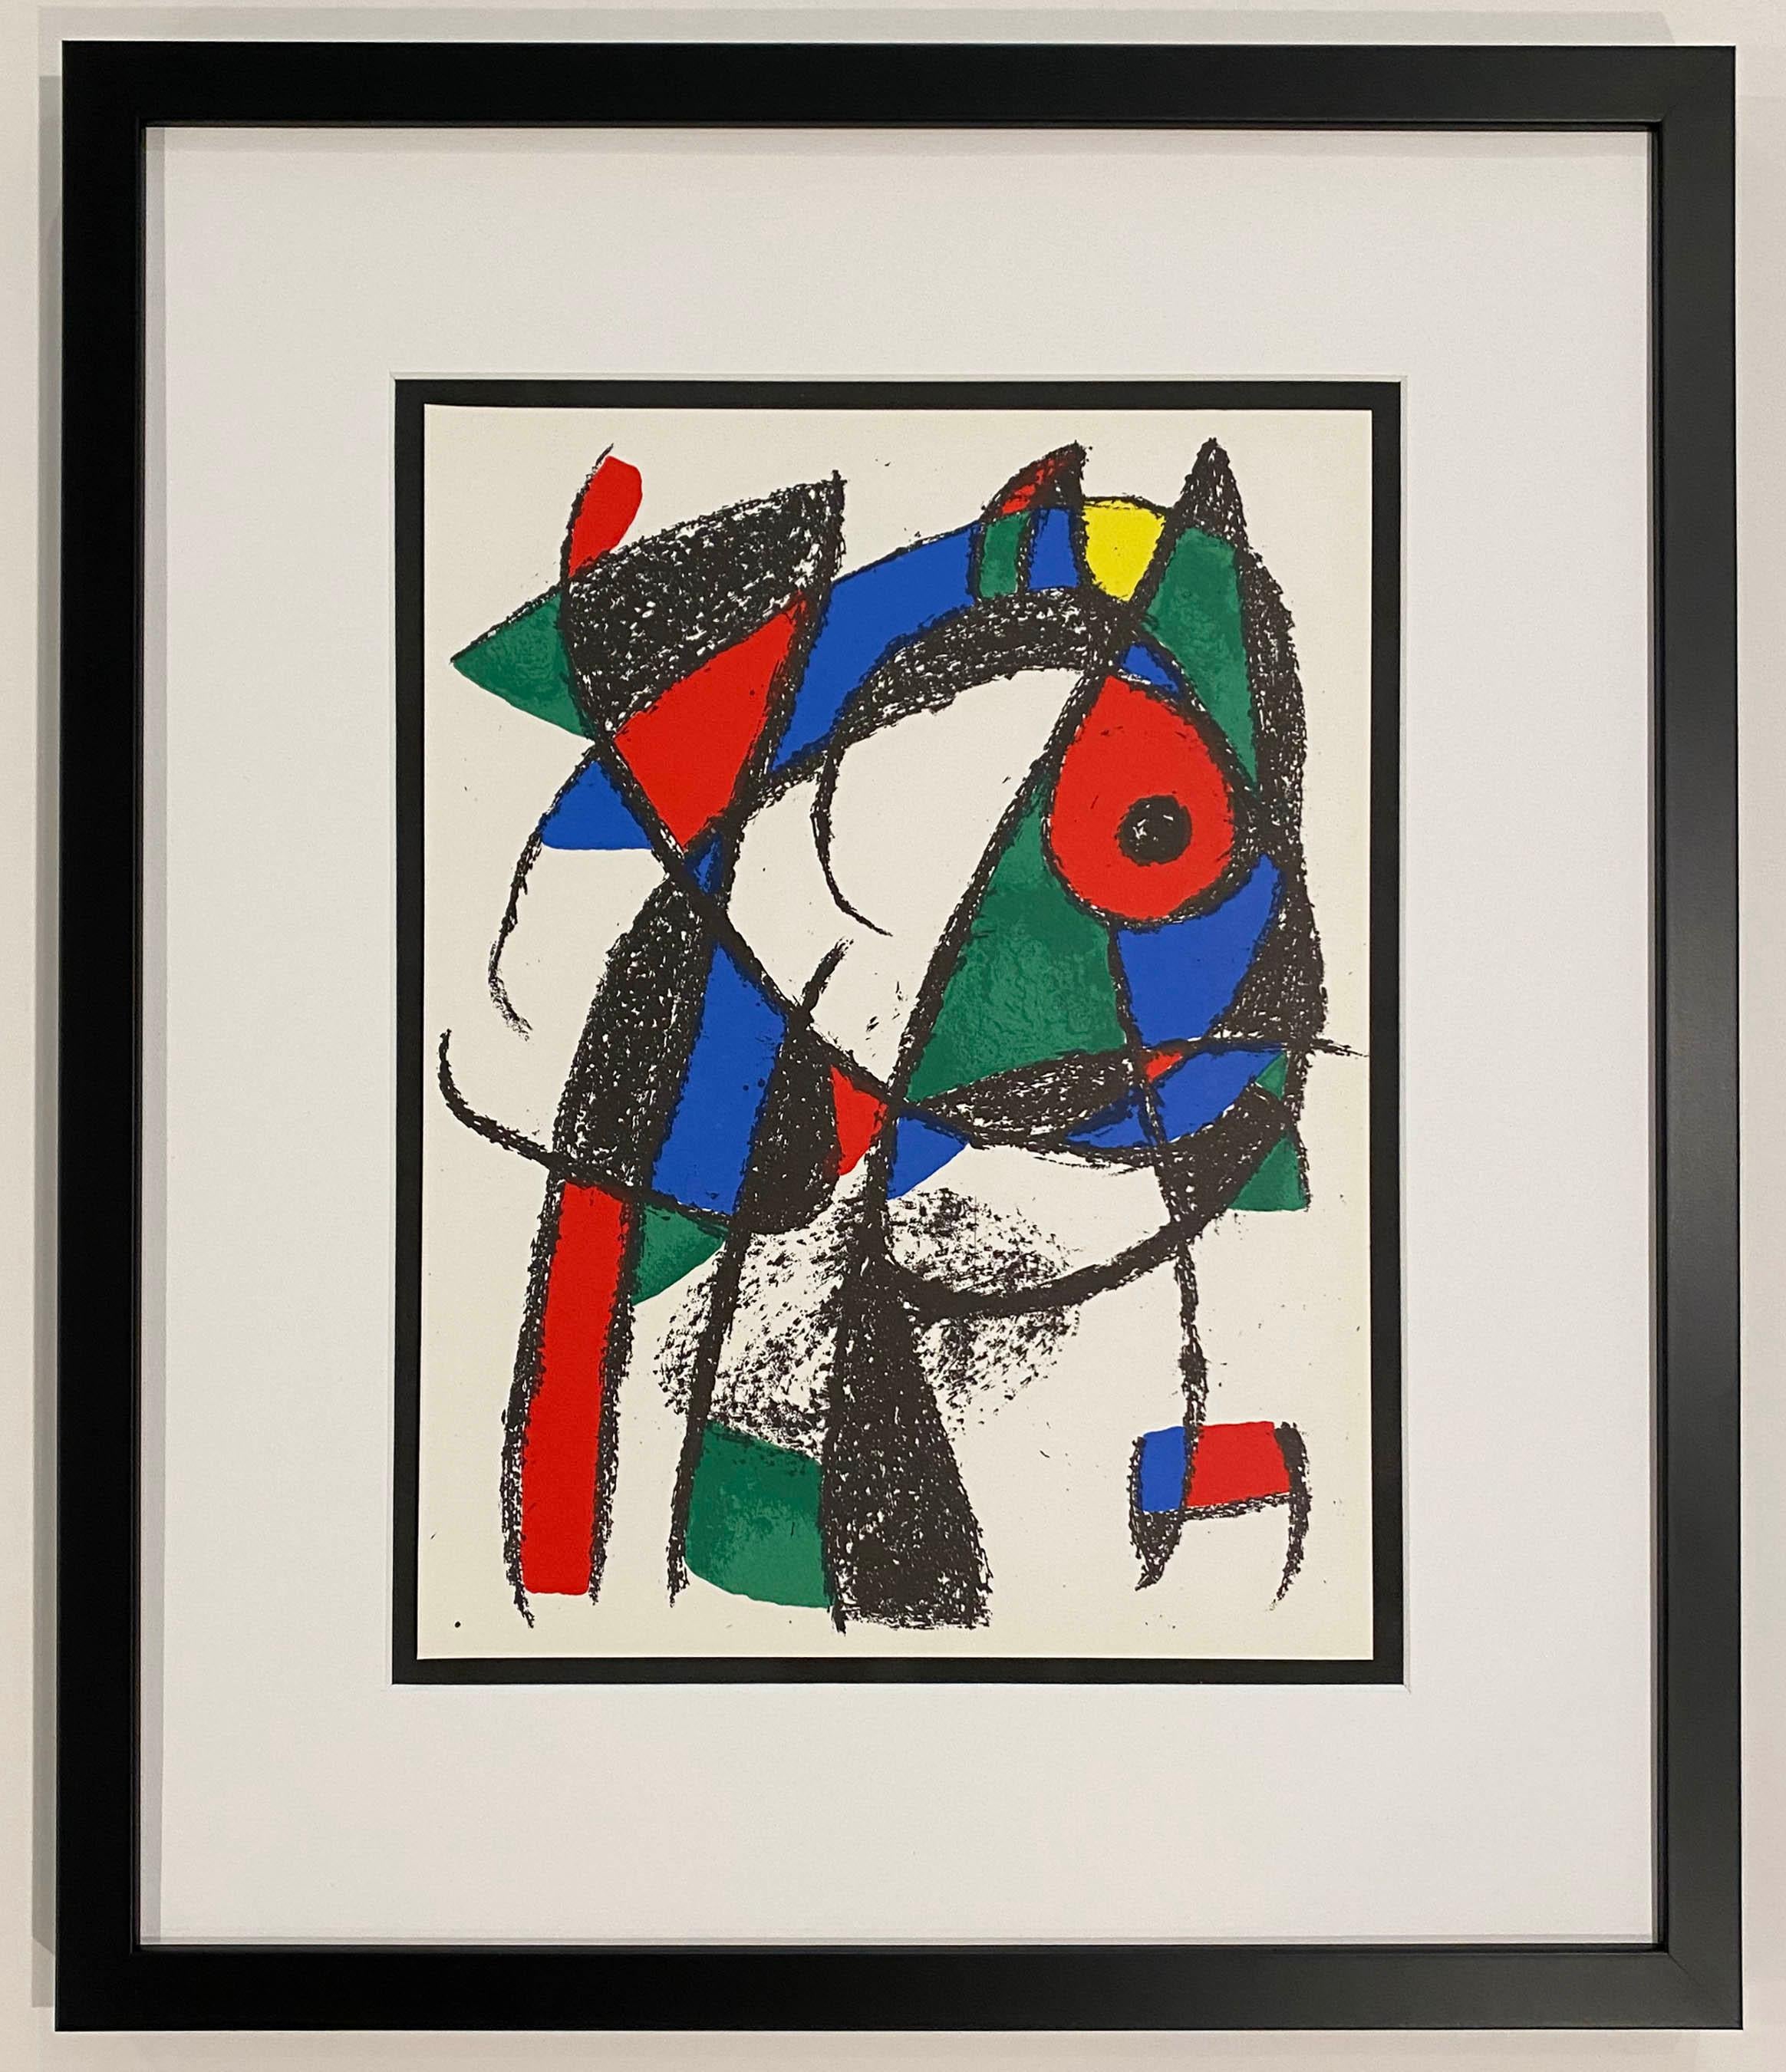 Plate I, von 1975, Lithographie II – Print von Joan Miró